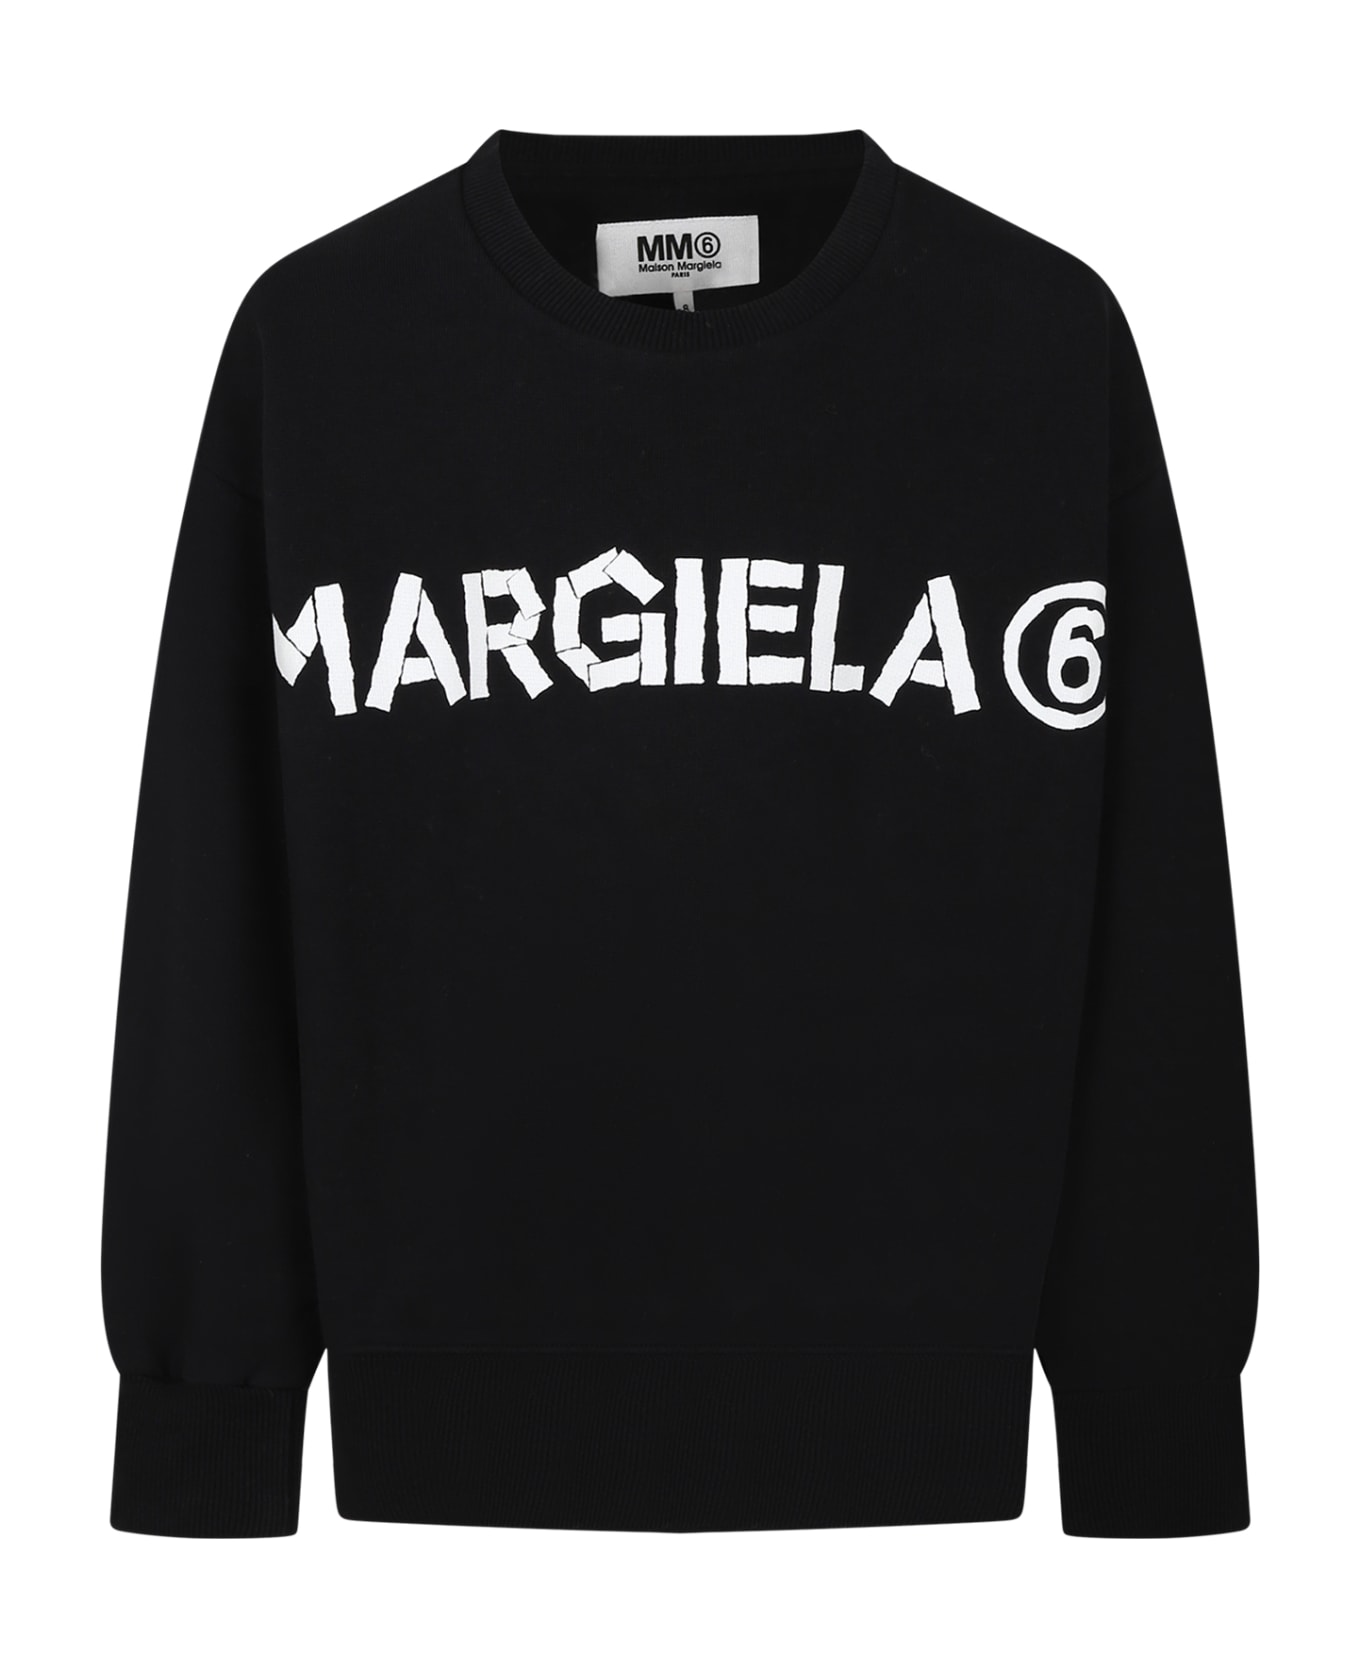 MM6 Maison Margiela Black Sweatshirt For Kids - M6900 ニットウェア＆スウェットシャツ